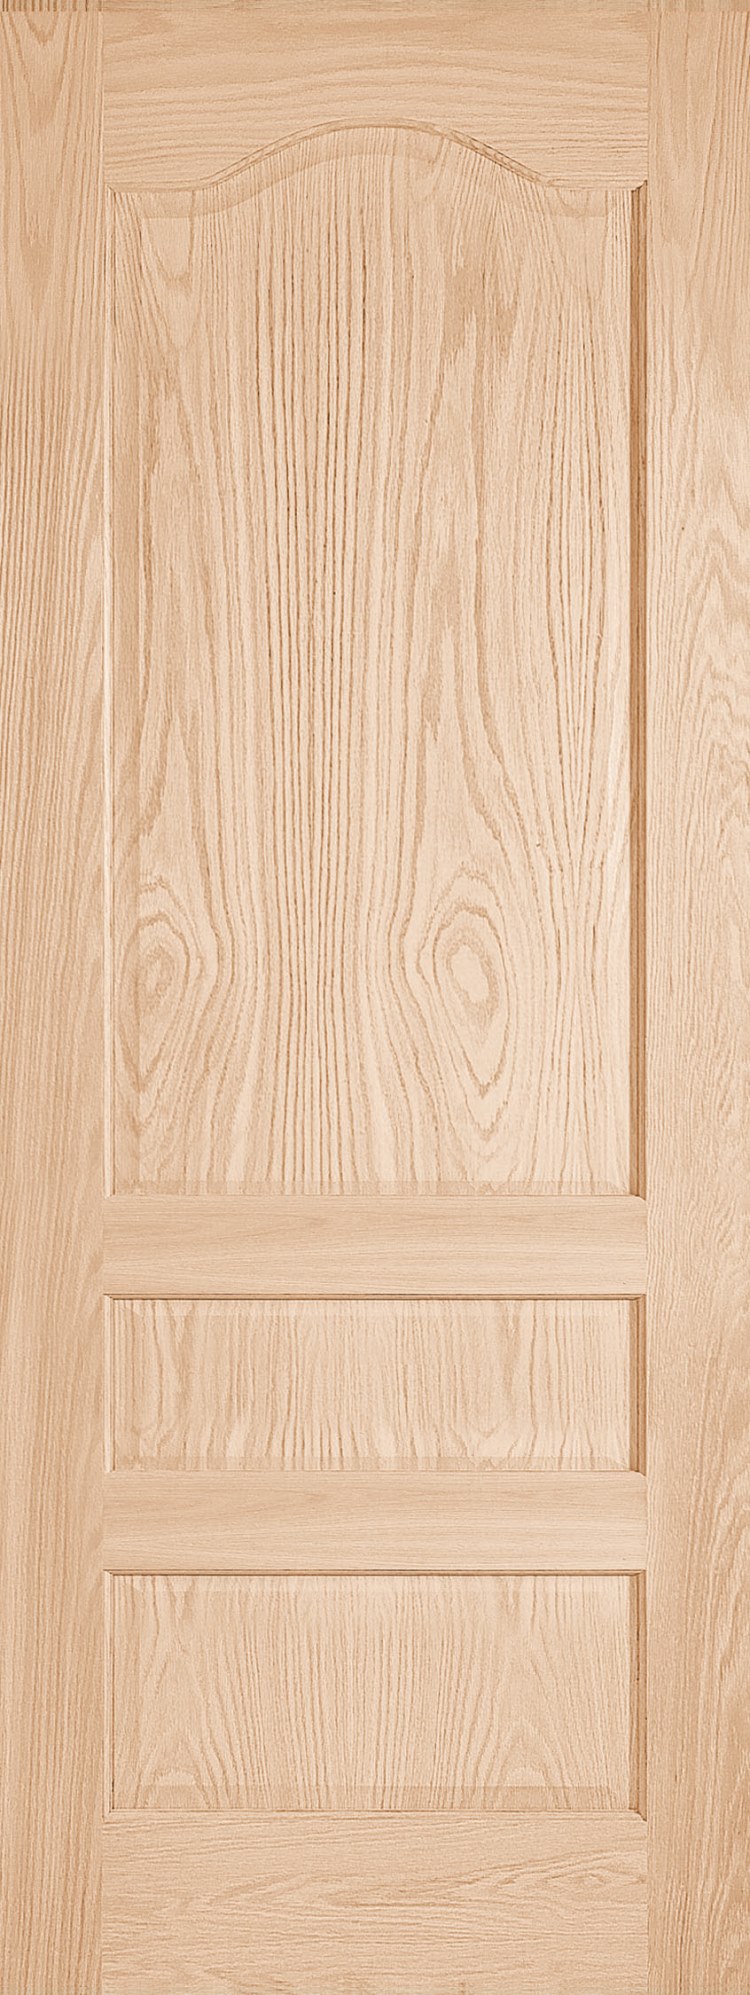 203KS Jeld-Wen interior solid wood 3 panel door